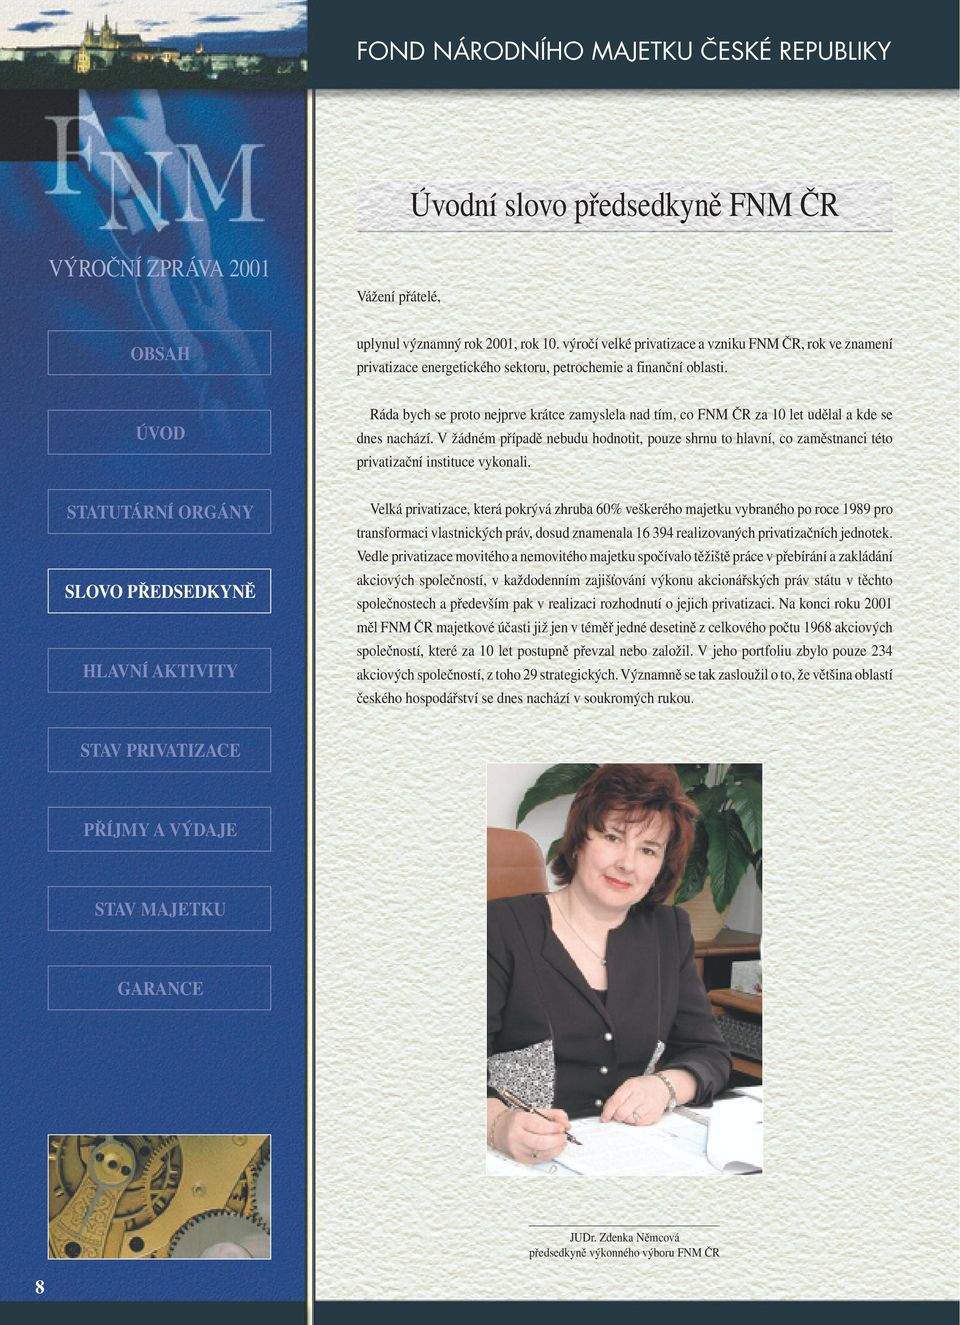 Ráda bych se proto nejprve krátce zamyslela nad tím, co FNM ČR za 10 let udělal a kde se dnes nachází.